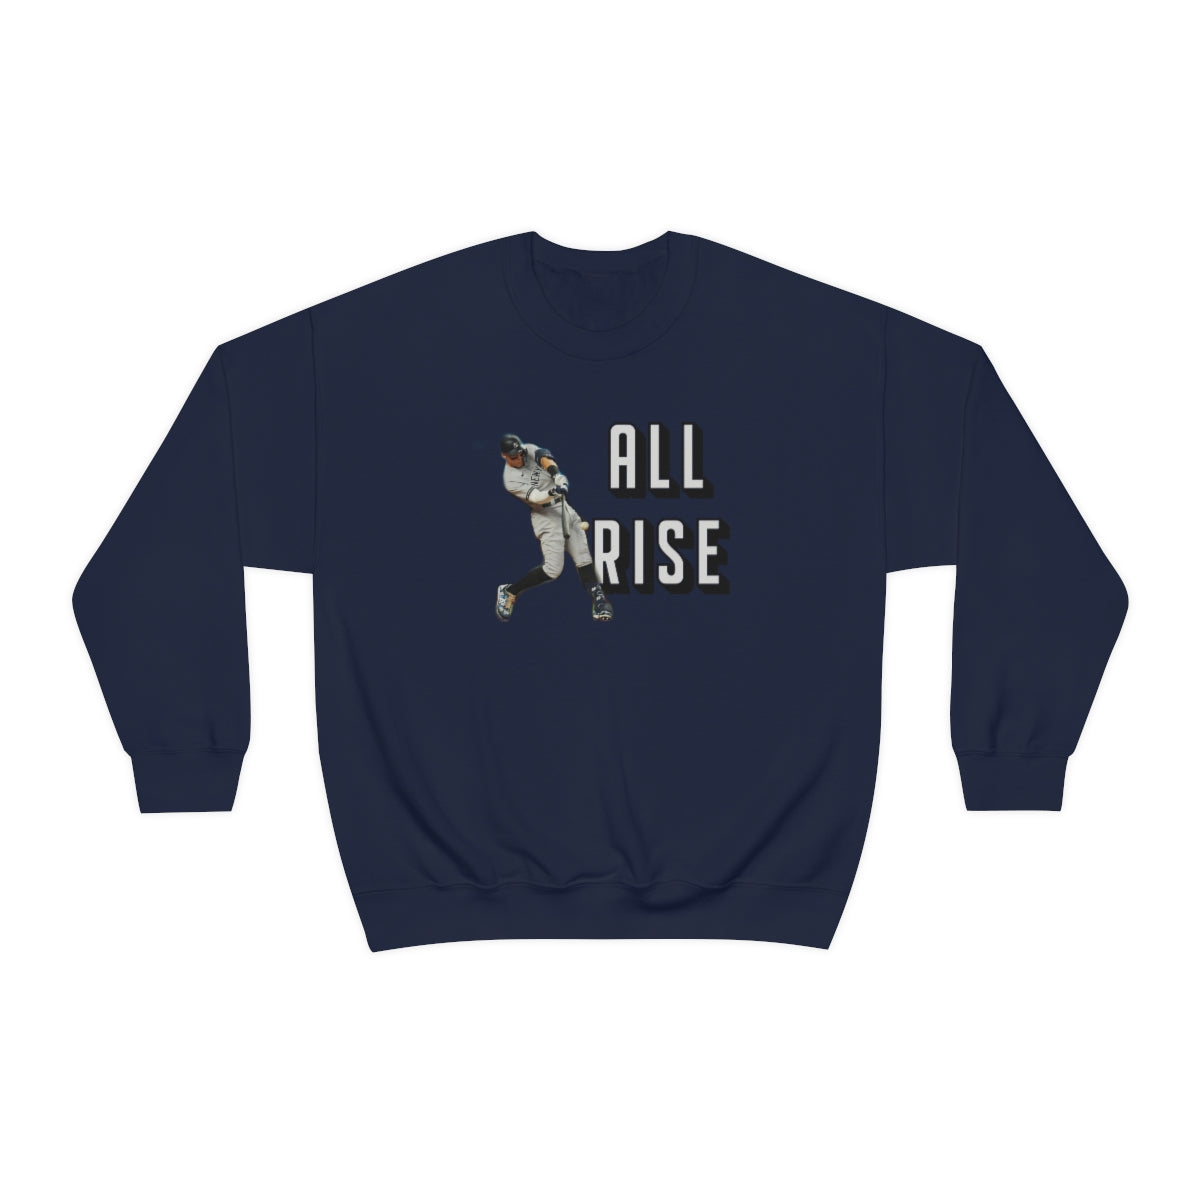 Yankees Aaron Judge All Rise Crewneck Sweatshirt - IsGoodBrand